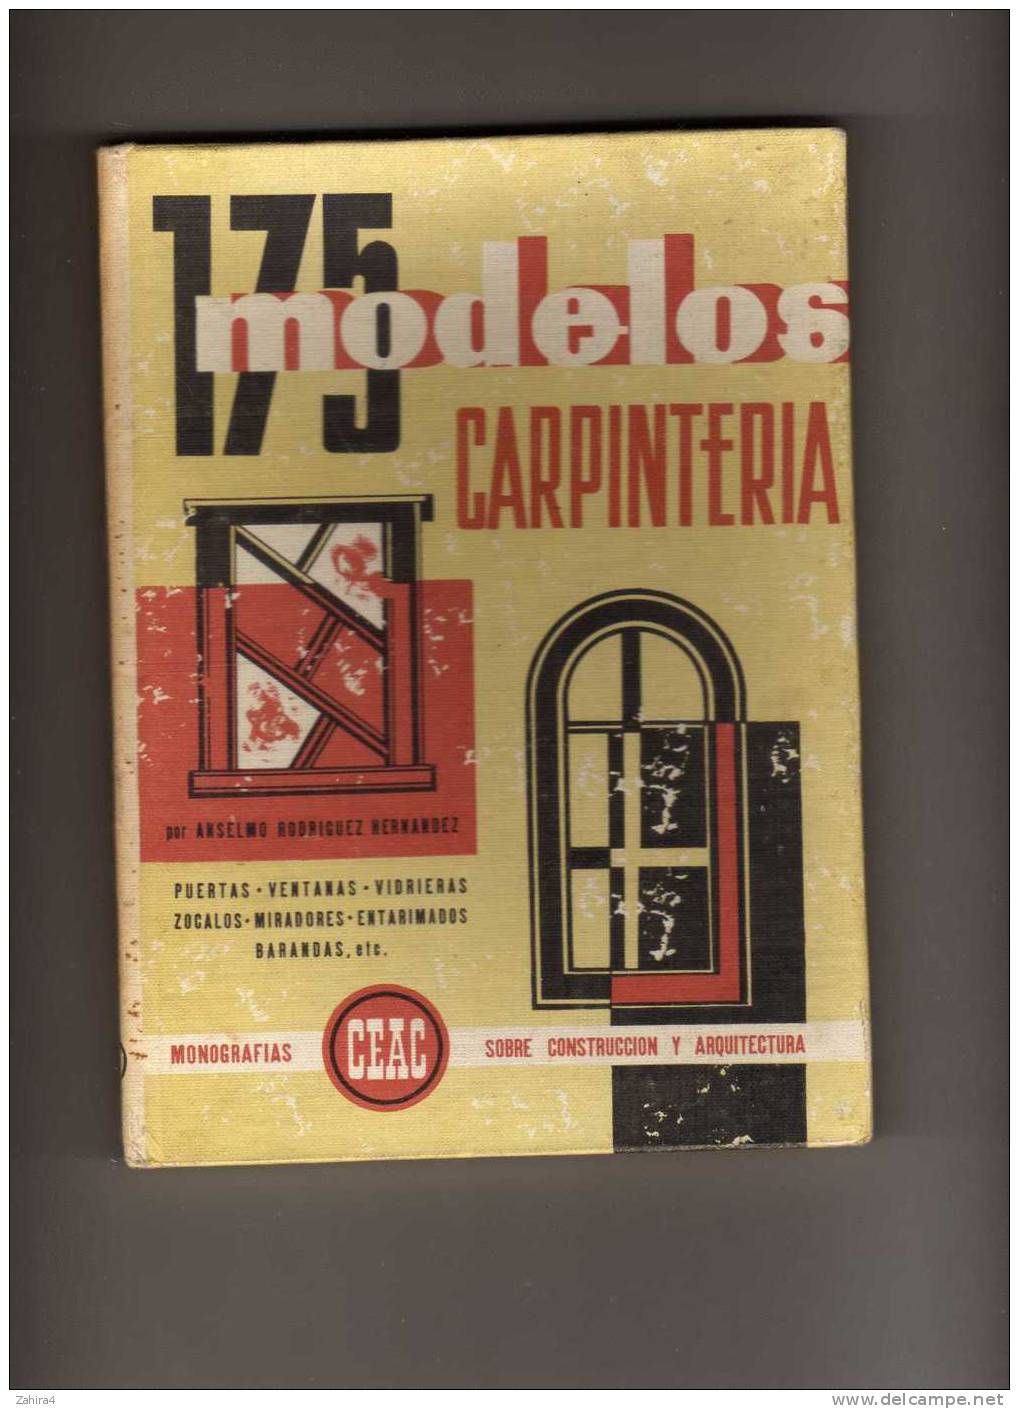 Carpinteria  -  175 Modelos Por Anselmo Rodriguez Hernandez - Monografias CEAC - Lifestyle